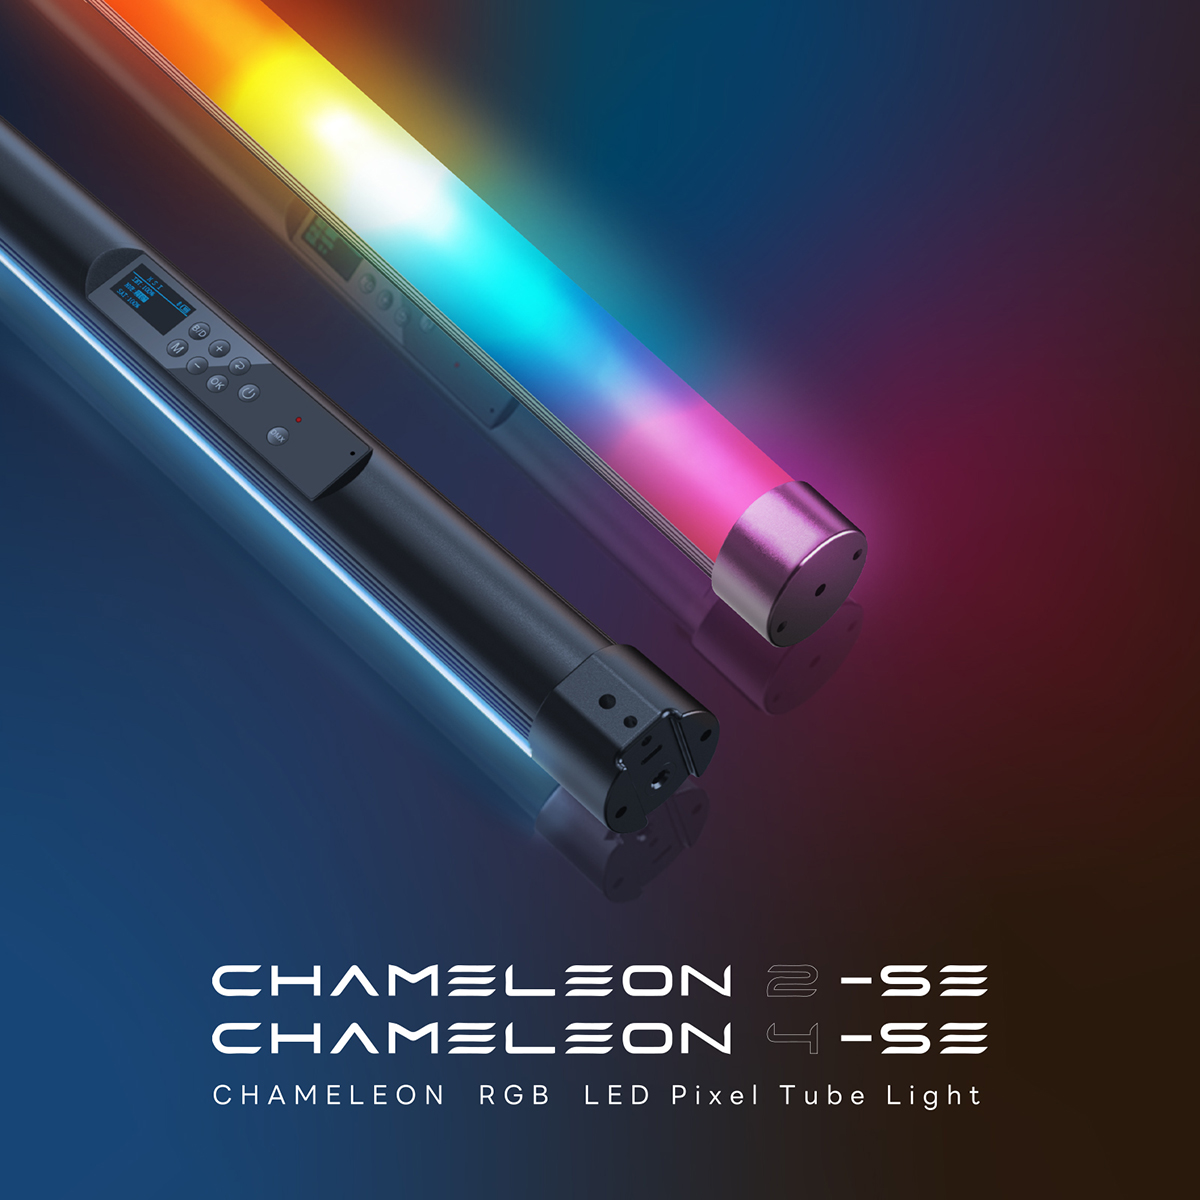 CHAMELEON2-SE CHAMELEON4-SE CHAMELEON RGB LED Pixel Tube Light